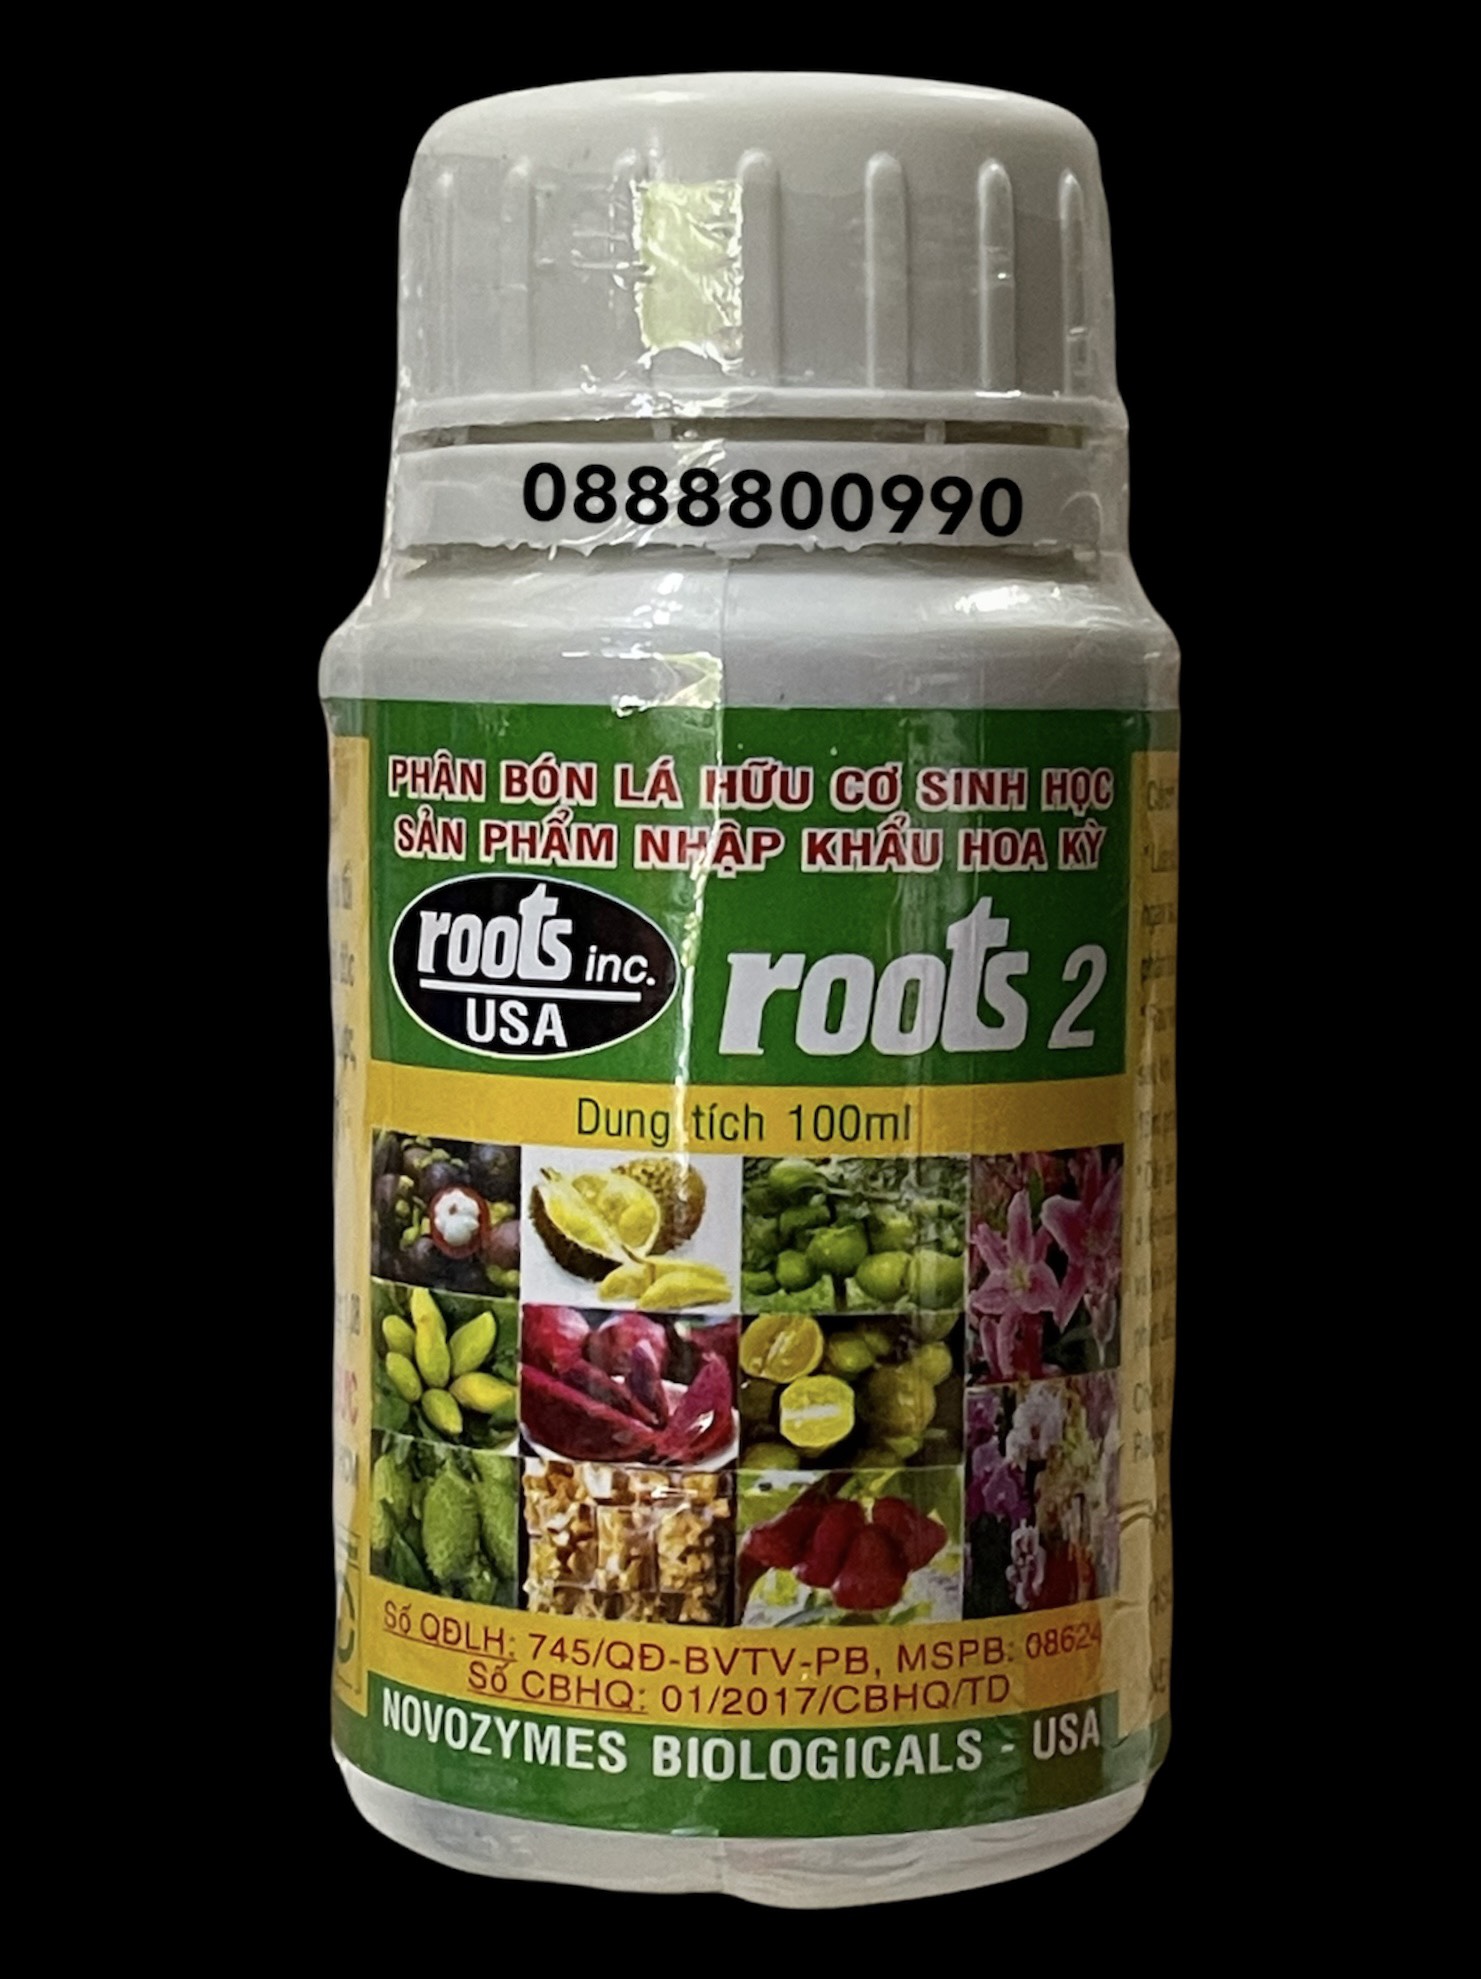 Phân bón Roots 2 USA chai 100ml kích ra rễ cực mạnh, phân bón lá hữu cơ sinh học nhập mỹ